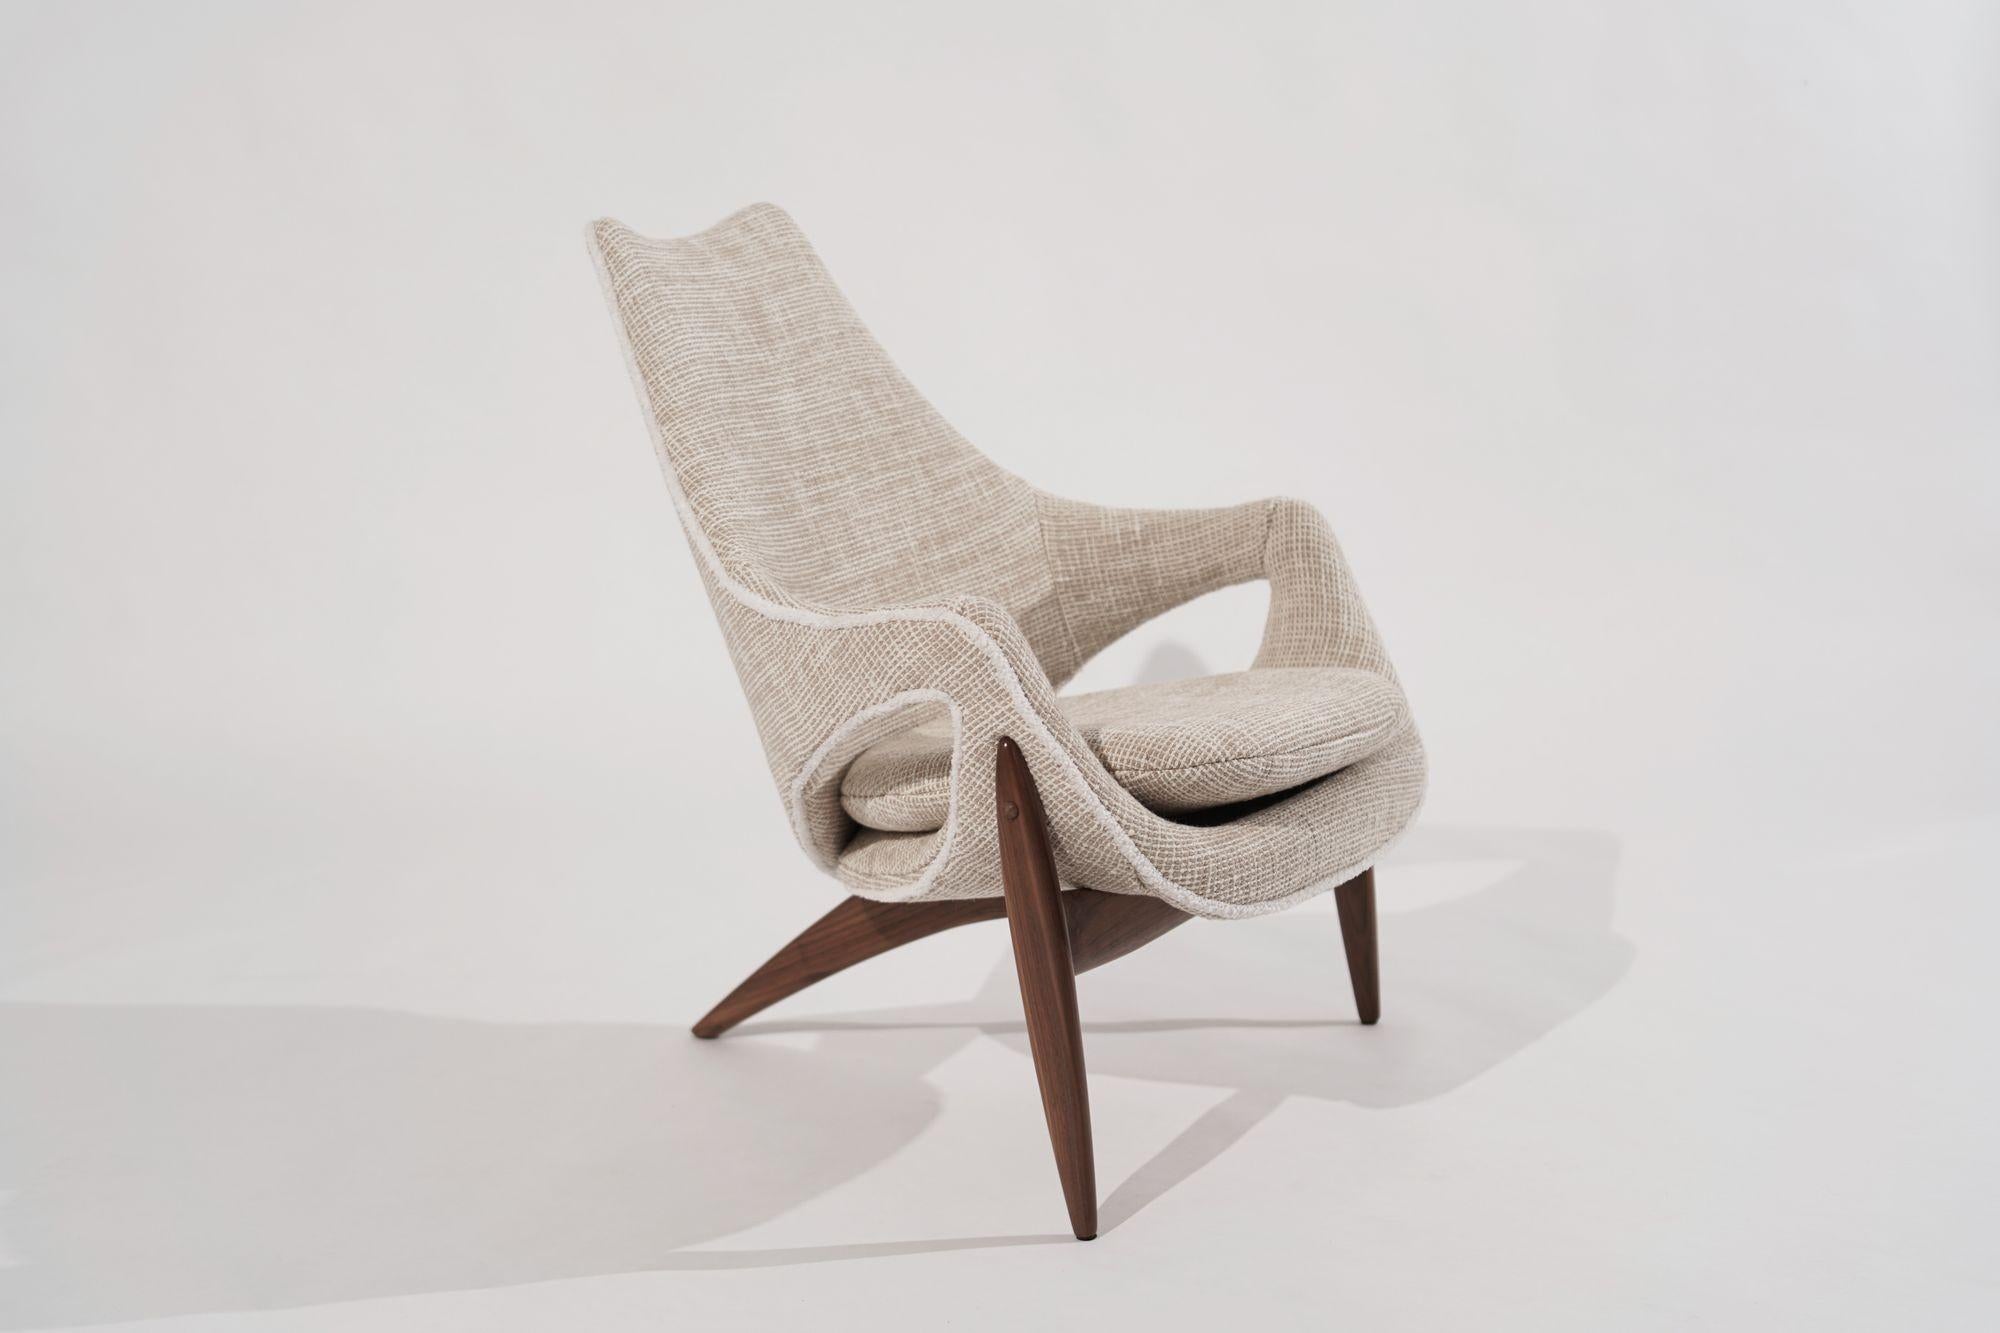 Luigi Tiengo 1950er Jahre skulpturalen Nussbaum Lounge Chair, ein wahres Juwel Vintage sorgfältig von Stamford Modern restauriert. 
Dieser Loungesessel wurde von Luigi Tiengo für Cimon in Montreal, Kanada, entworfen und ist eine Hommage an das